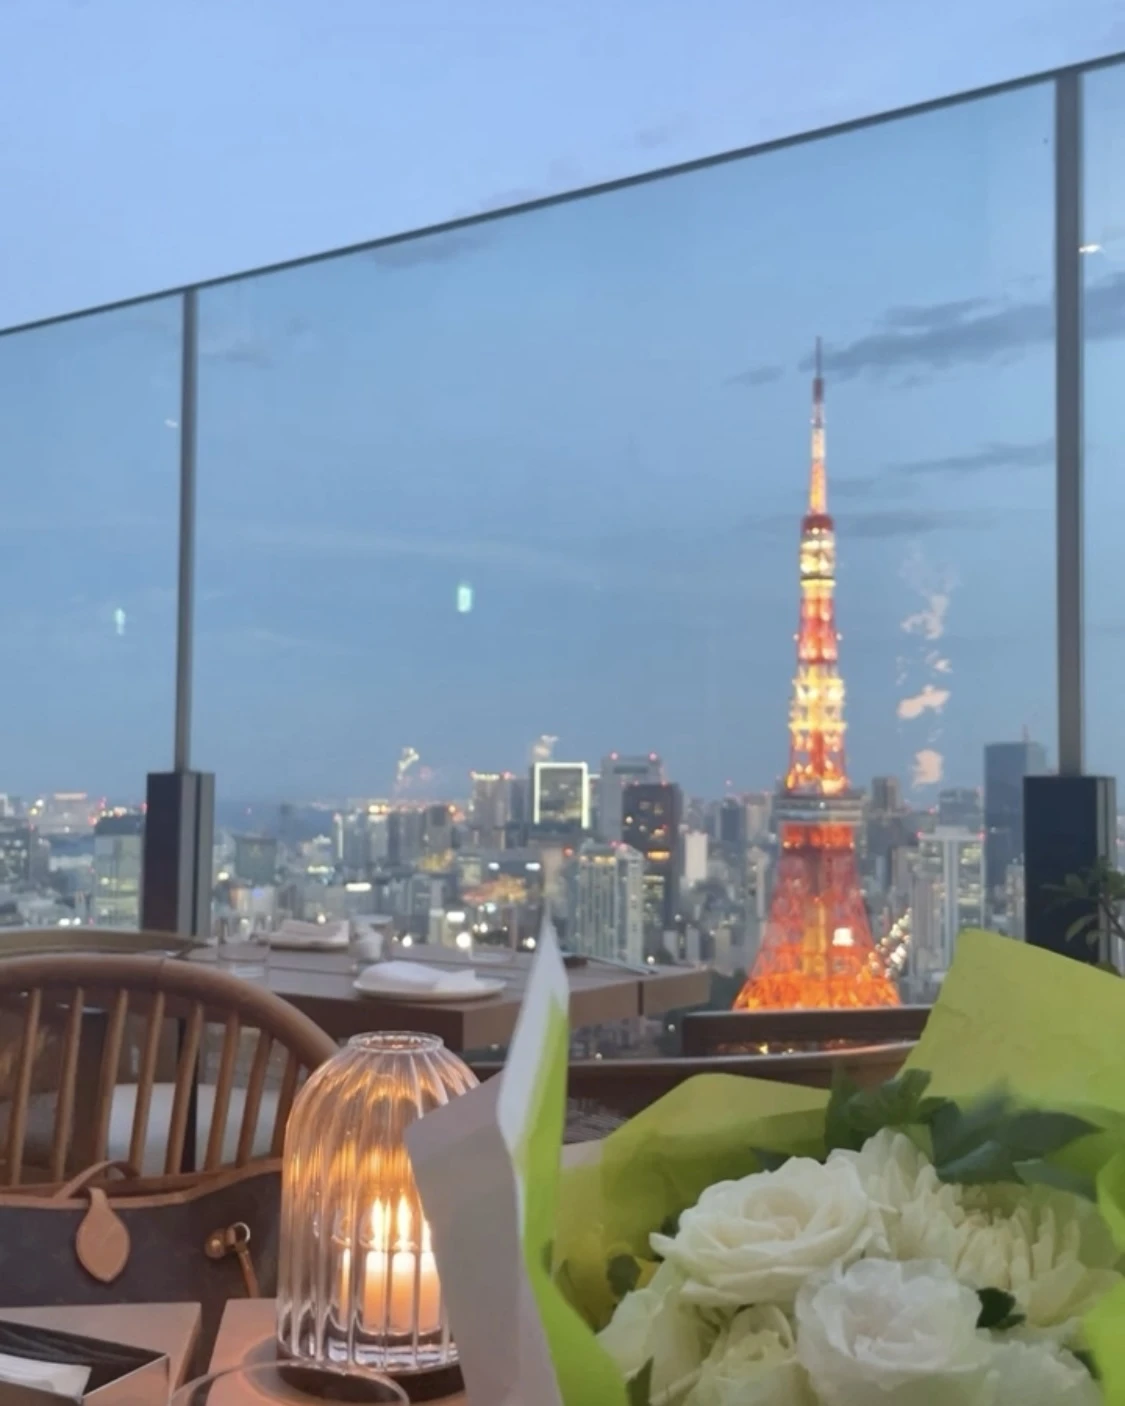 テラス席からの景色
目の前には東京タワー